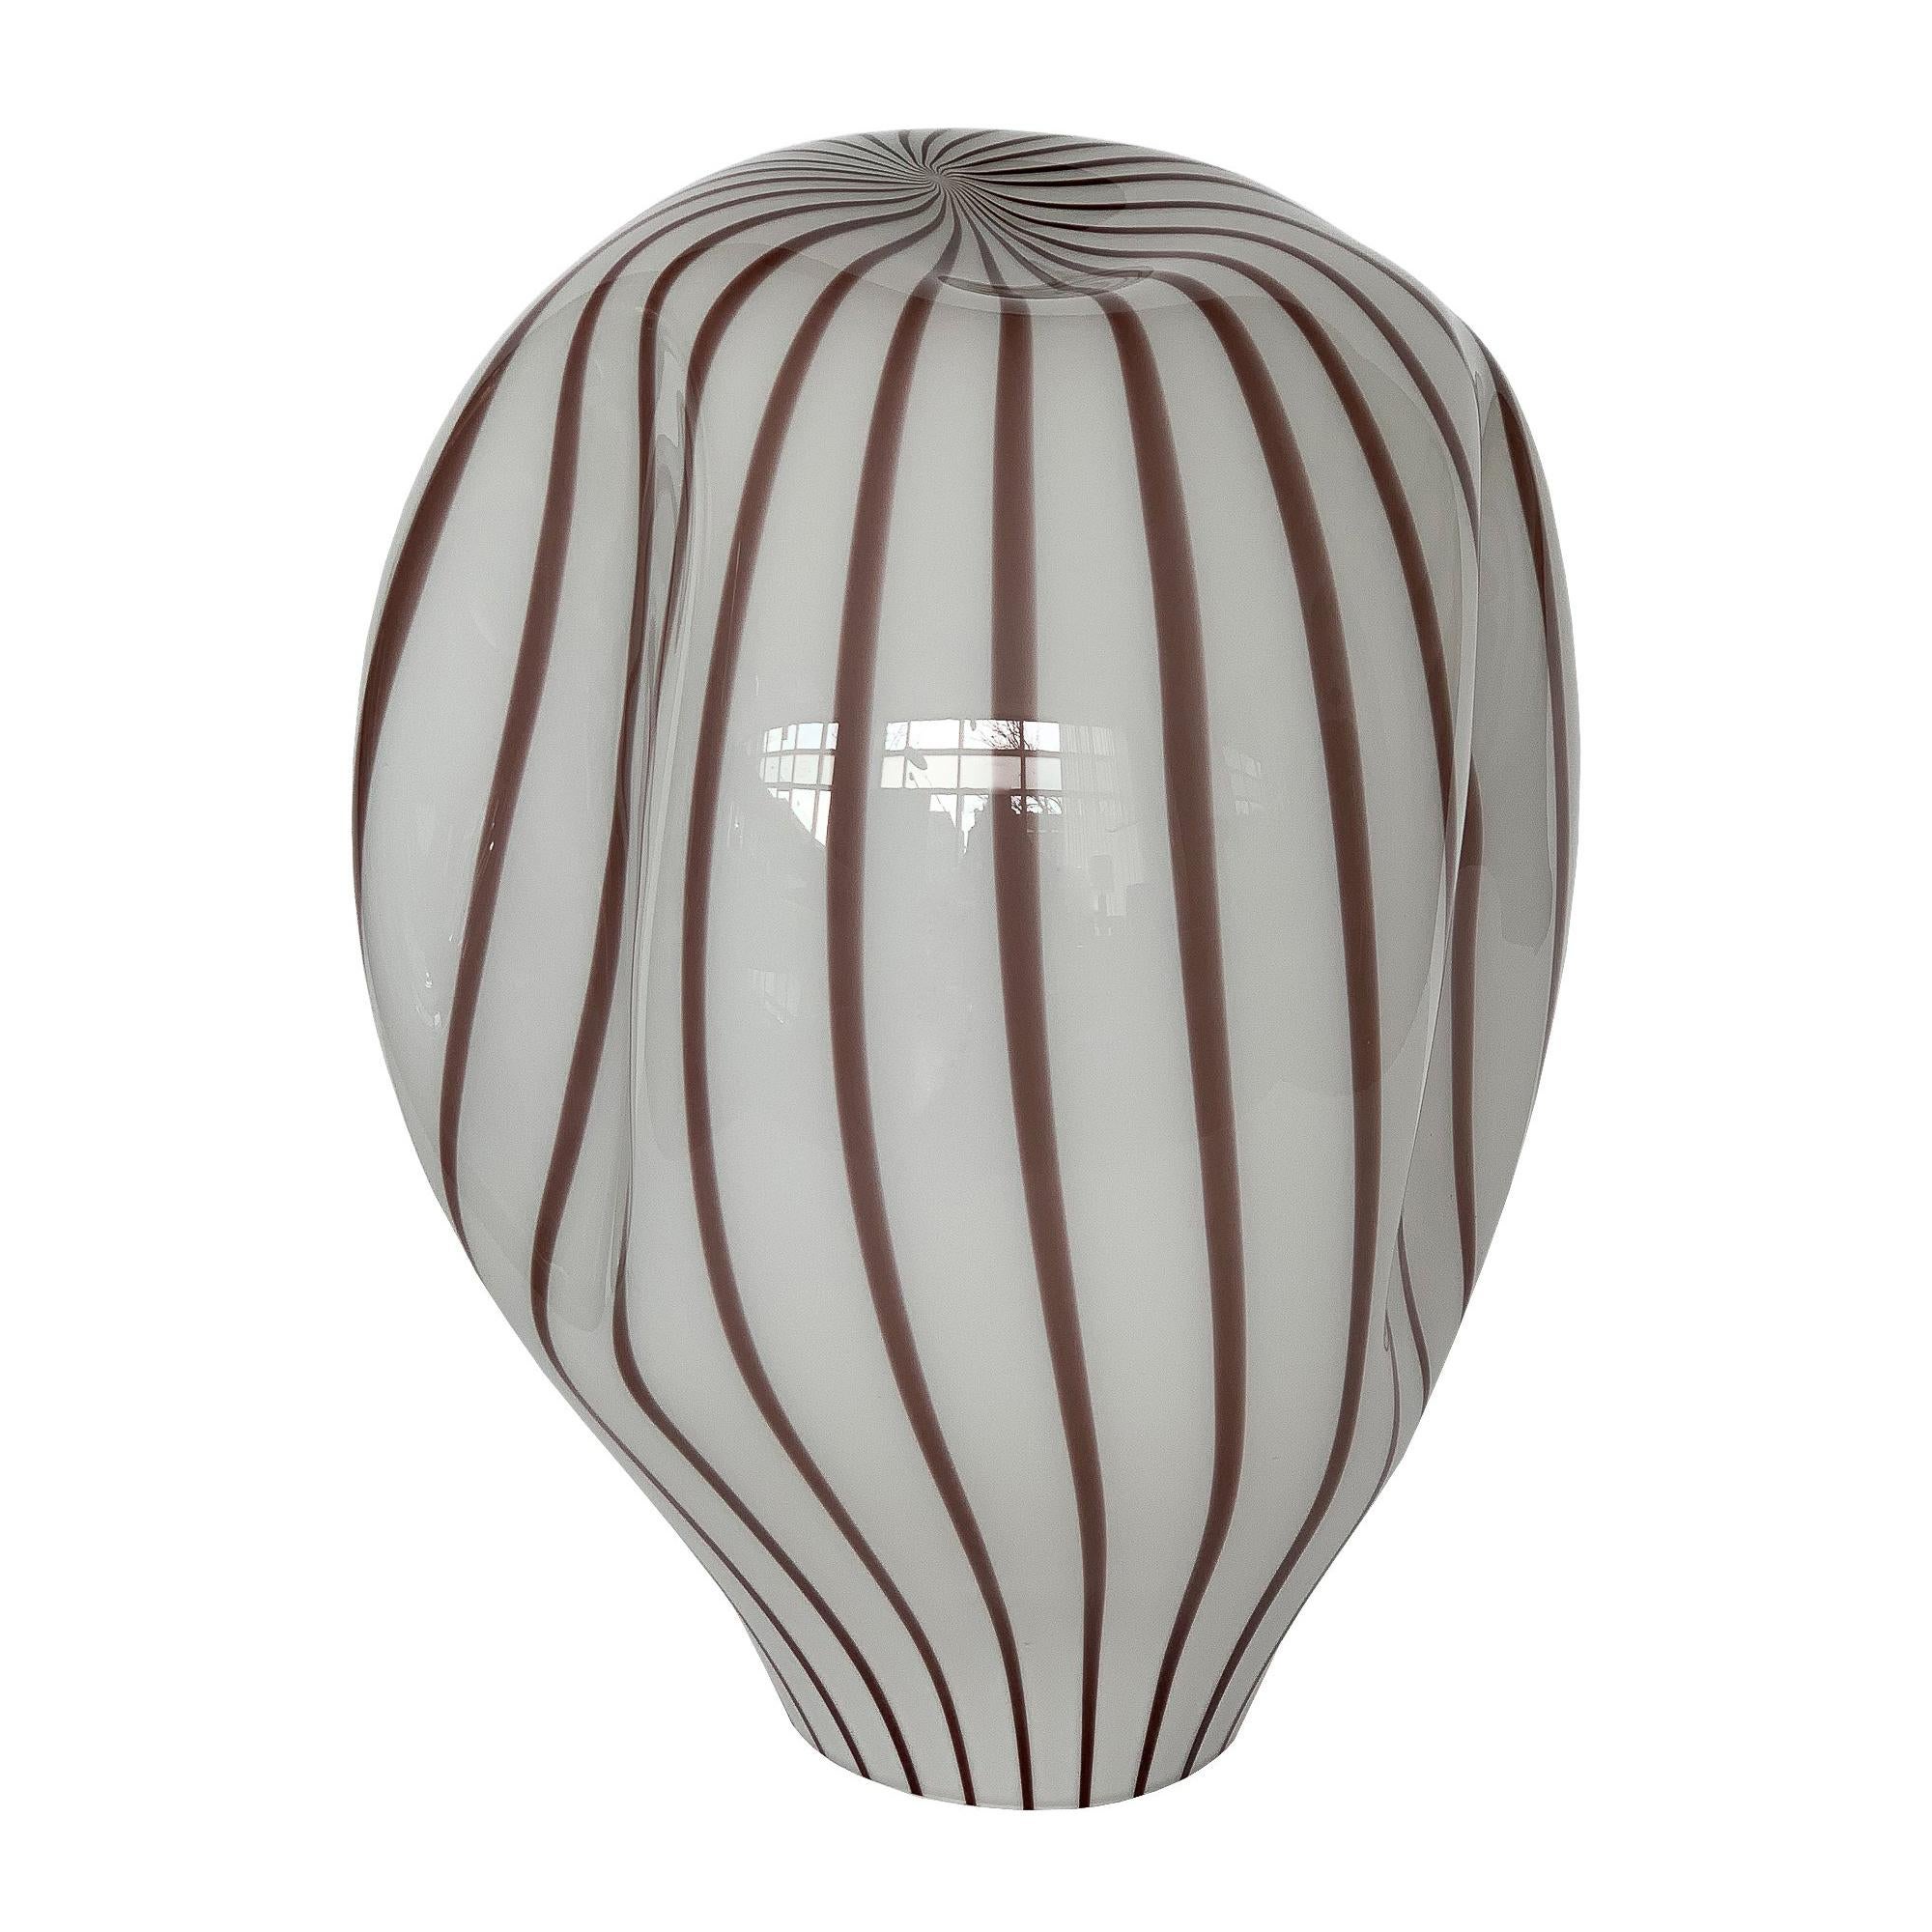 Lino Tagliapietra Murano Glass Striped Balloon Table Lamp for Effetre